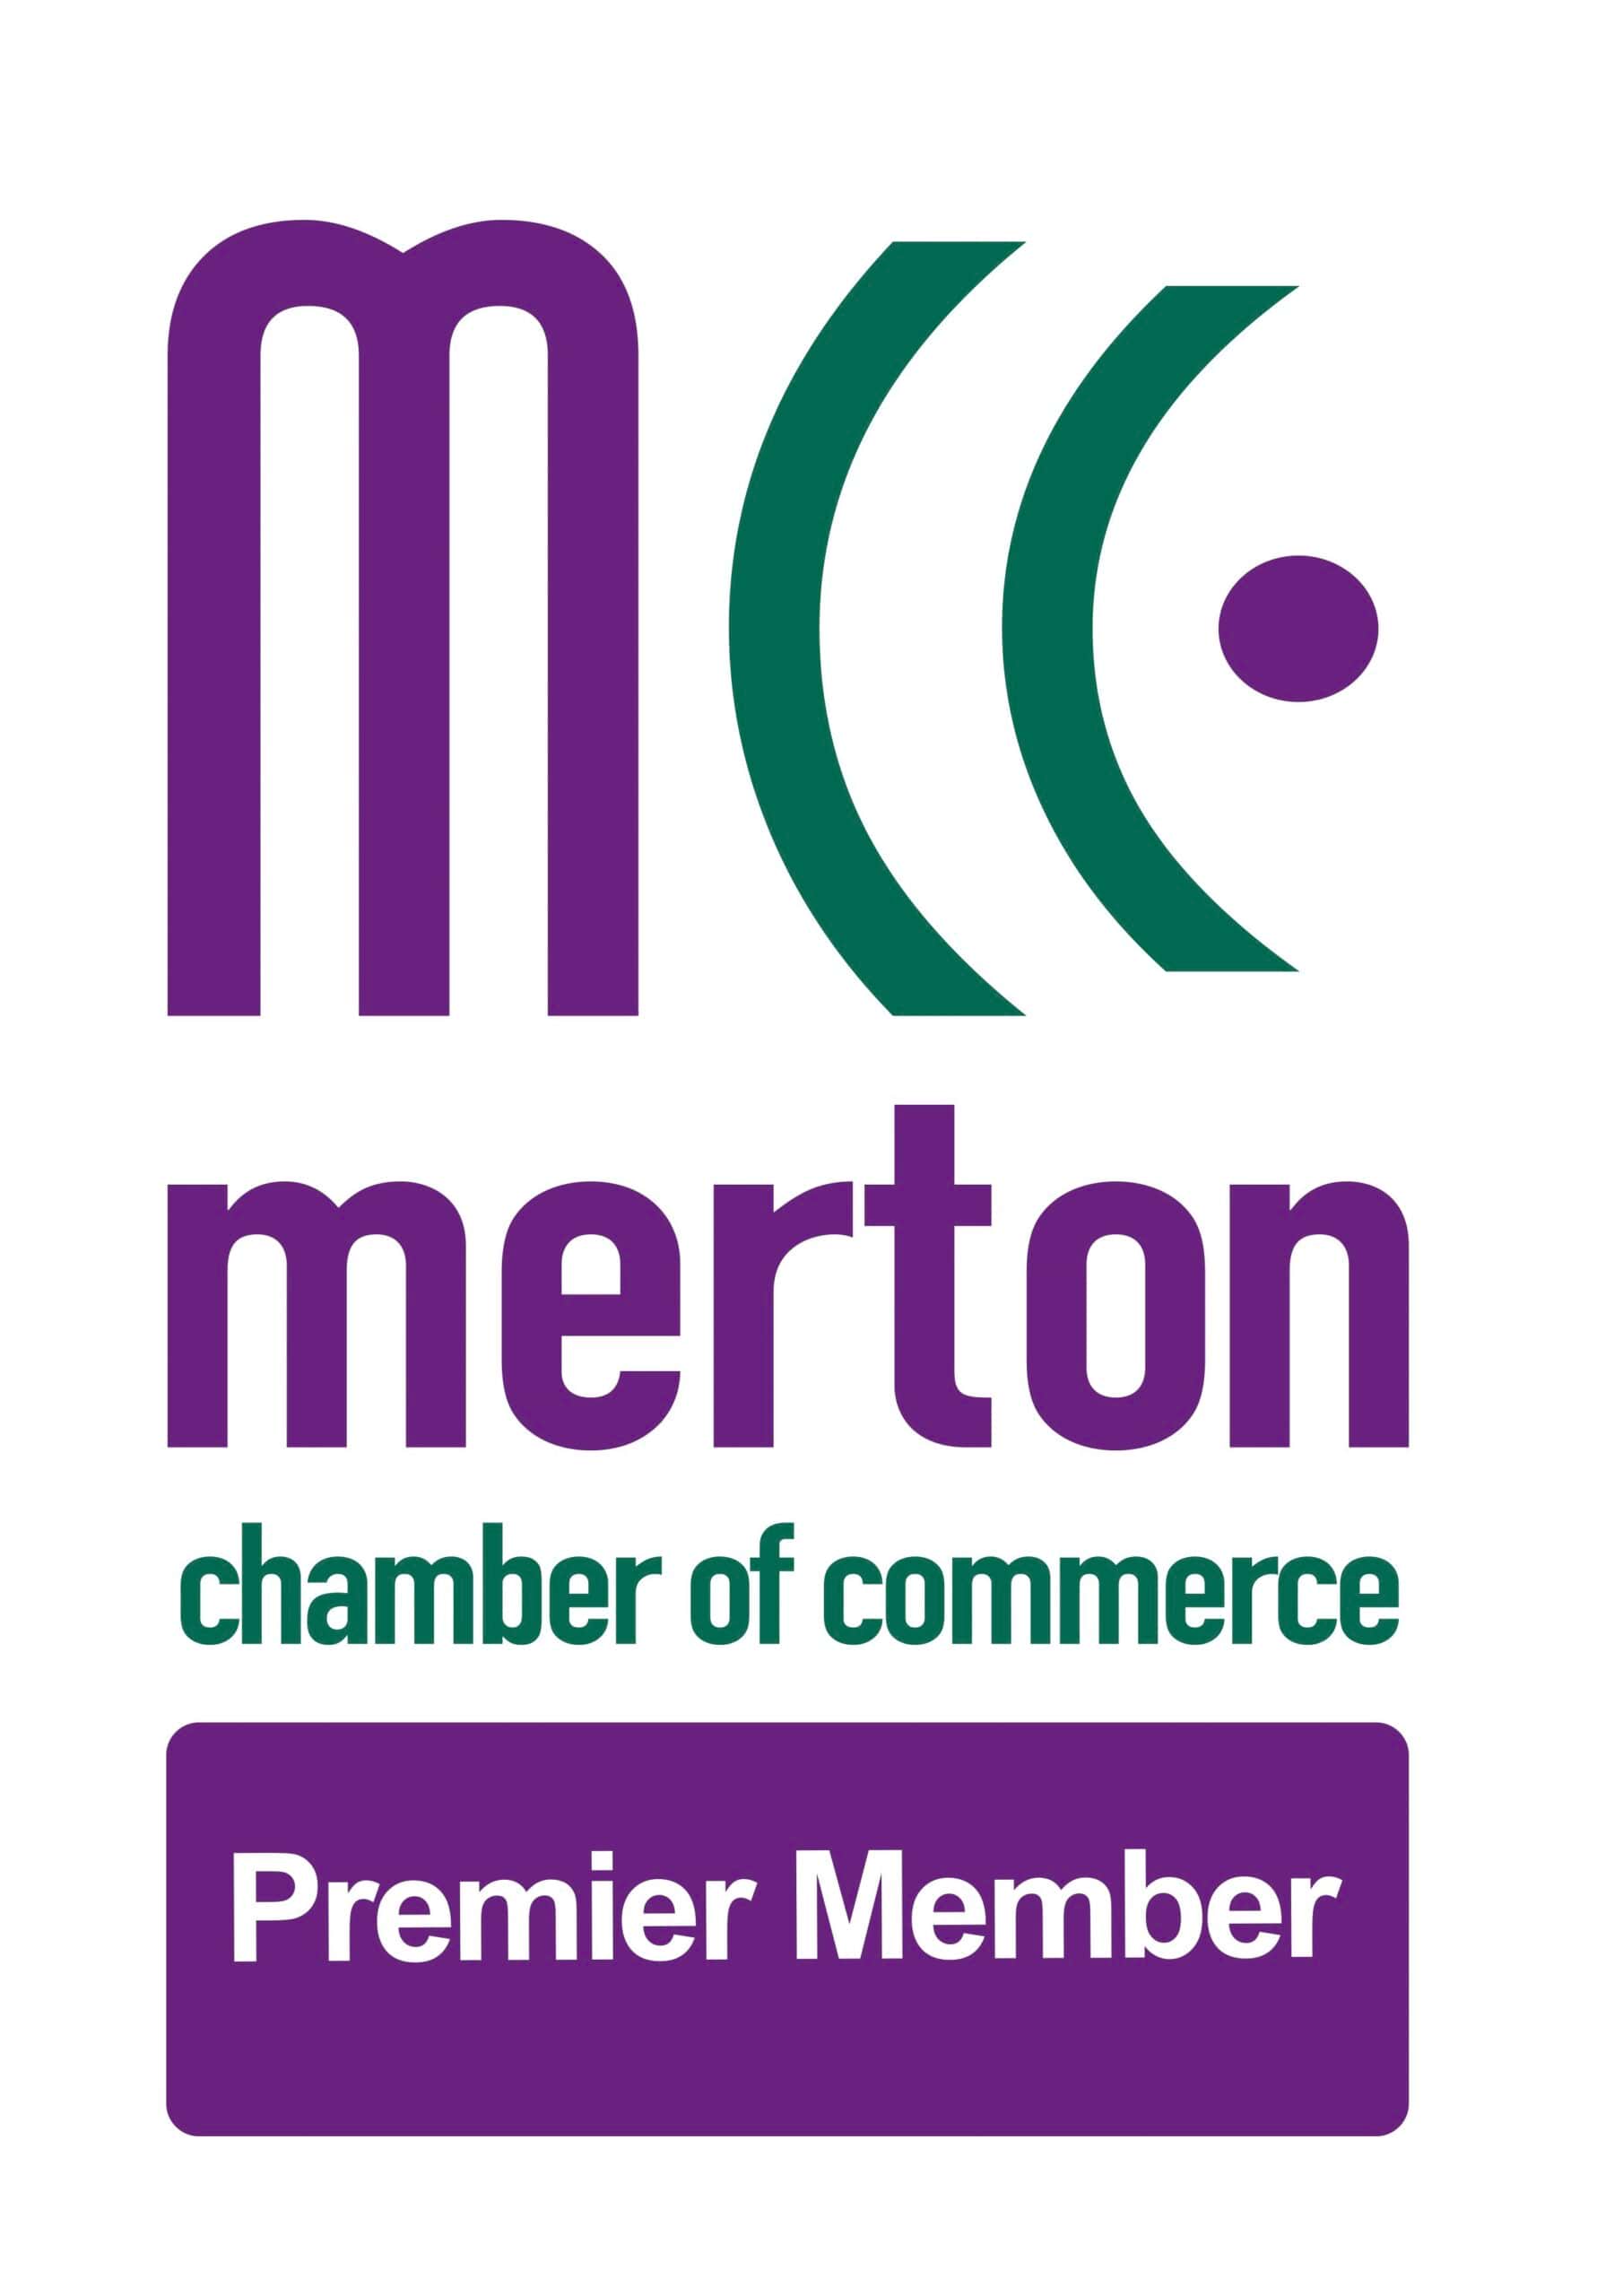 Merton Chamber of Commerce logo